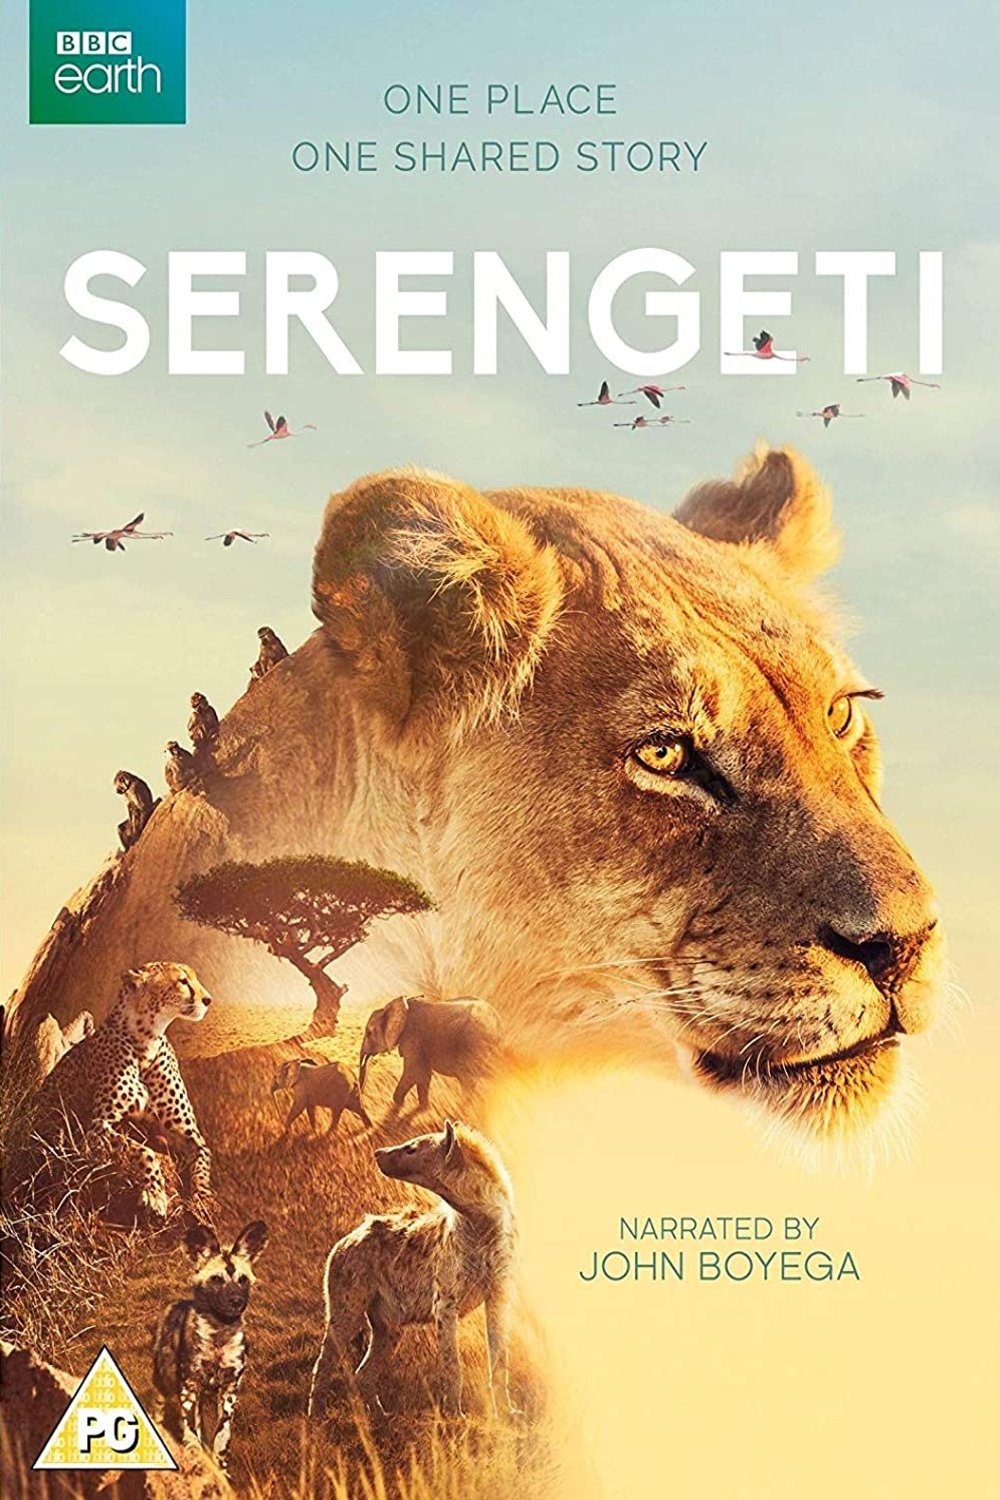 Poster of the movie Serengeti